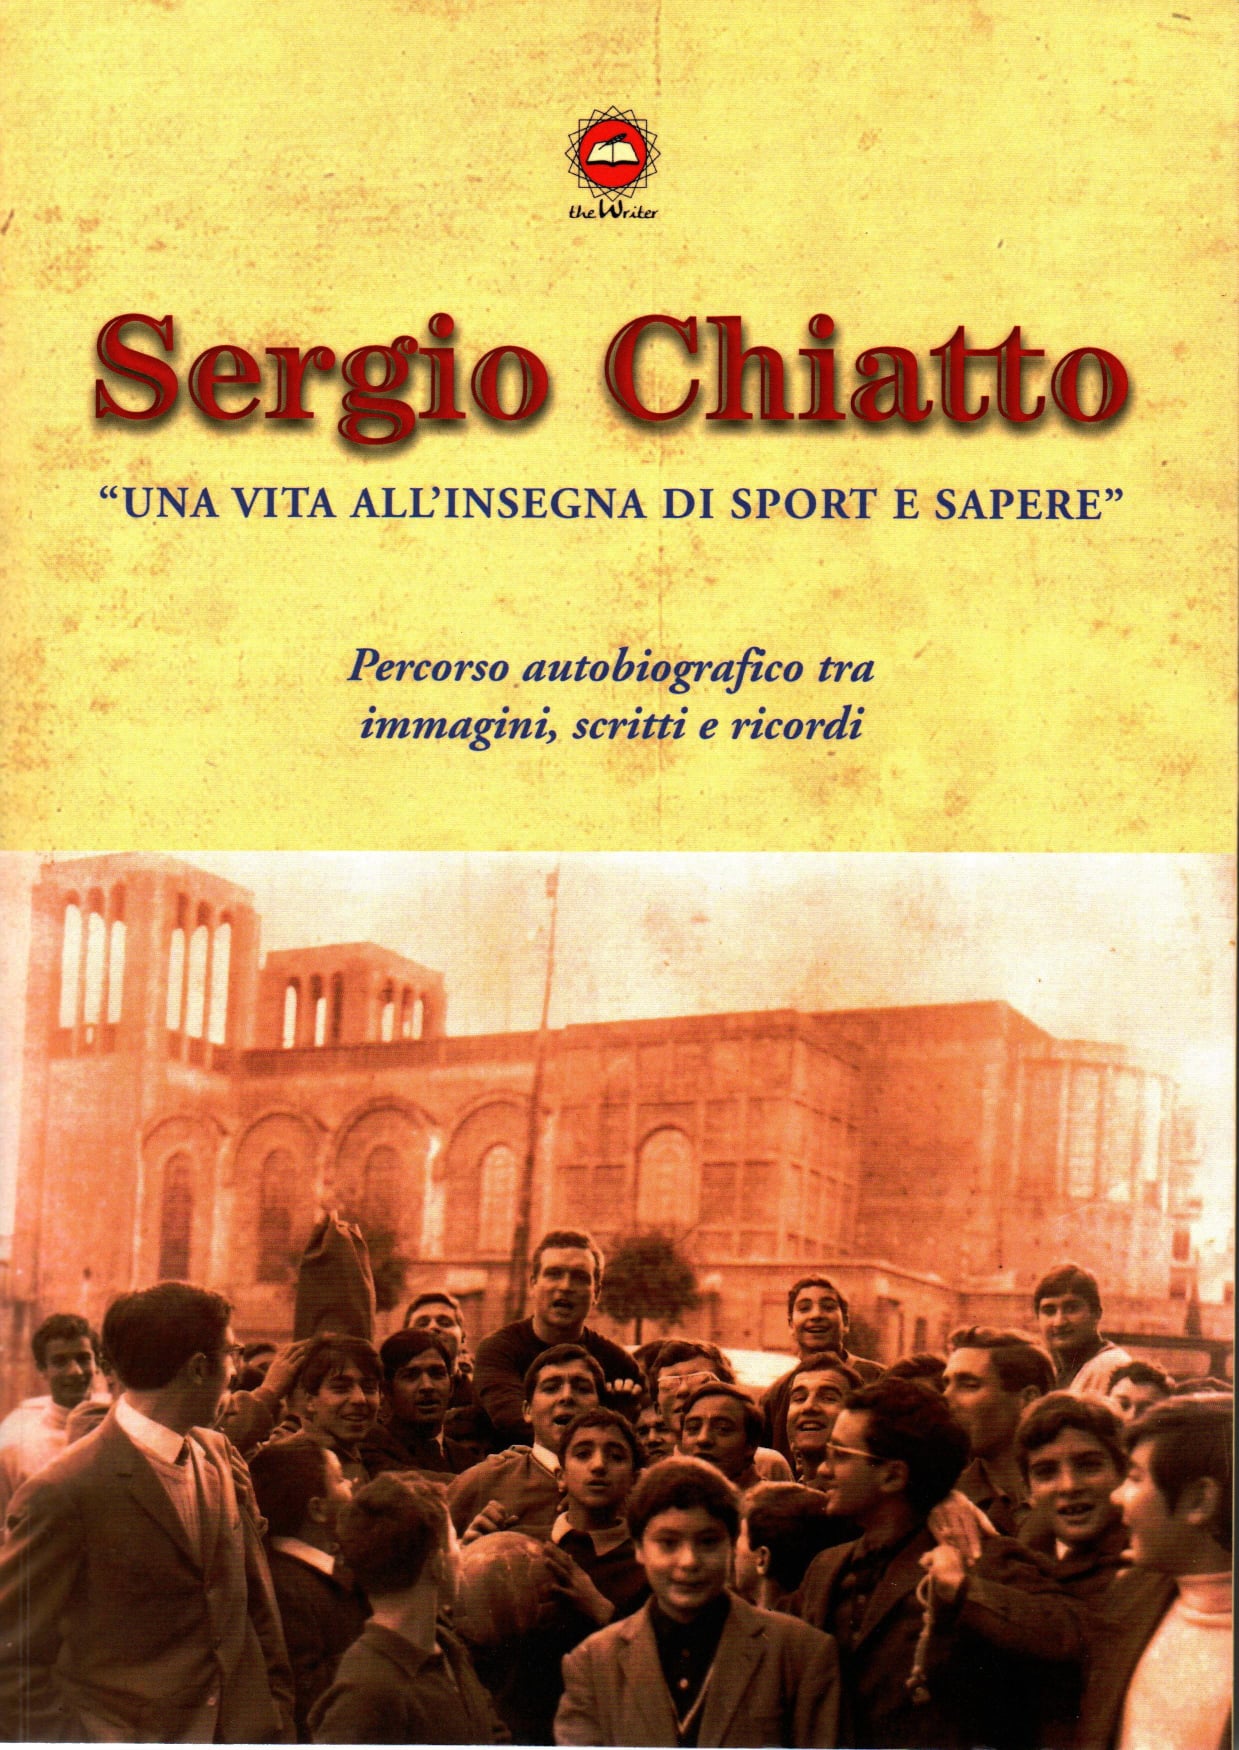 Il racconto della vita di Sergio Chiatto tra sport e sapere